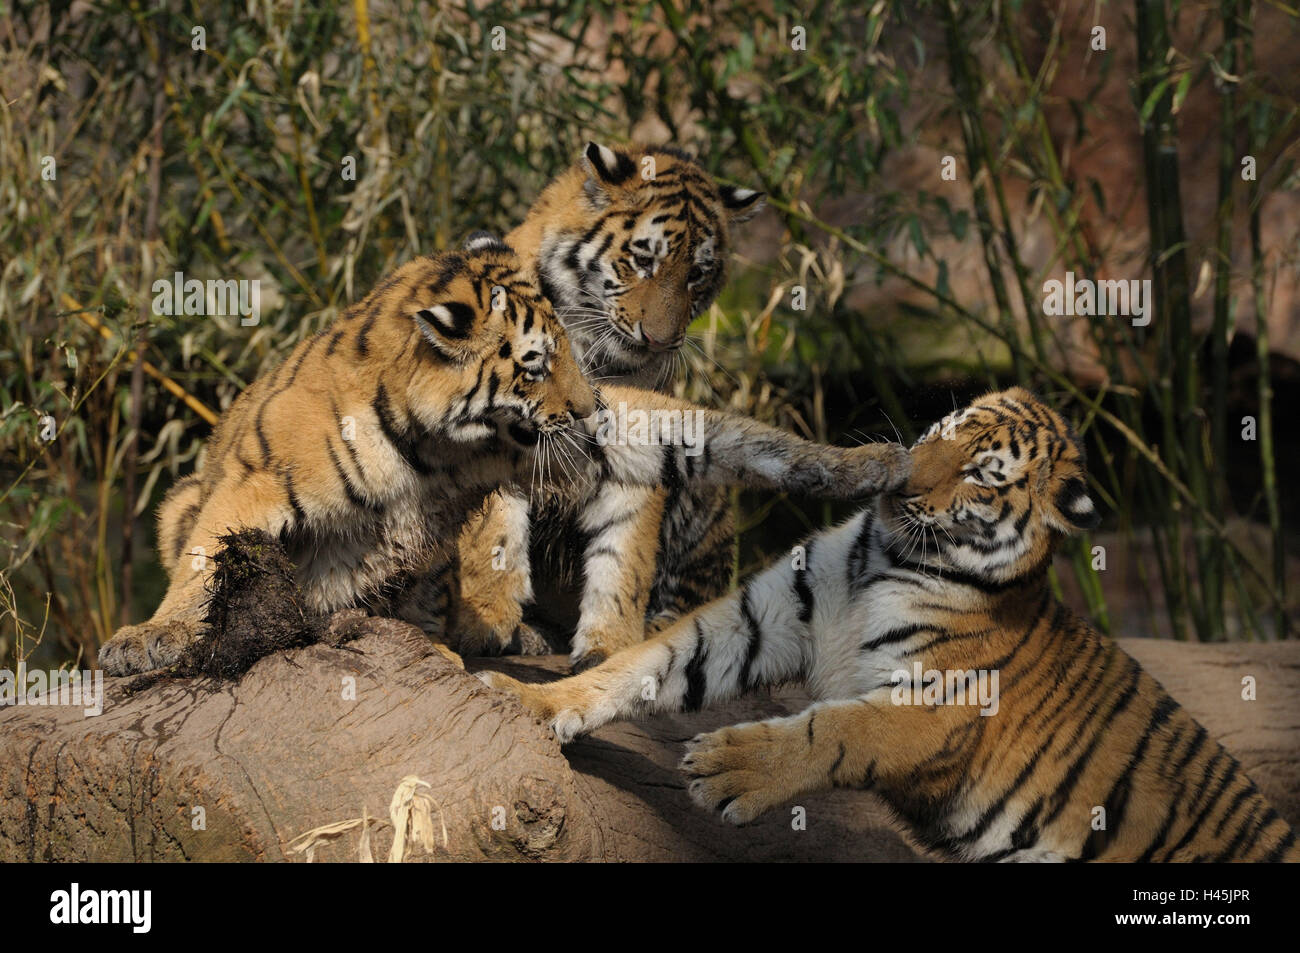 Siberian tigers, Panthera tigris altaica, Stock Photo